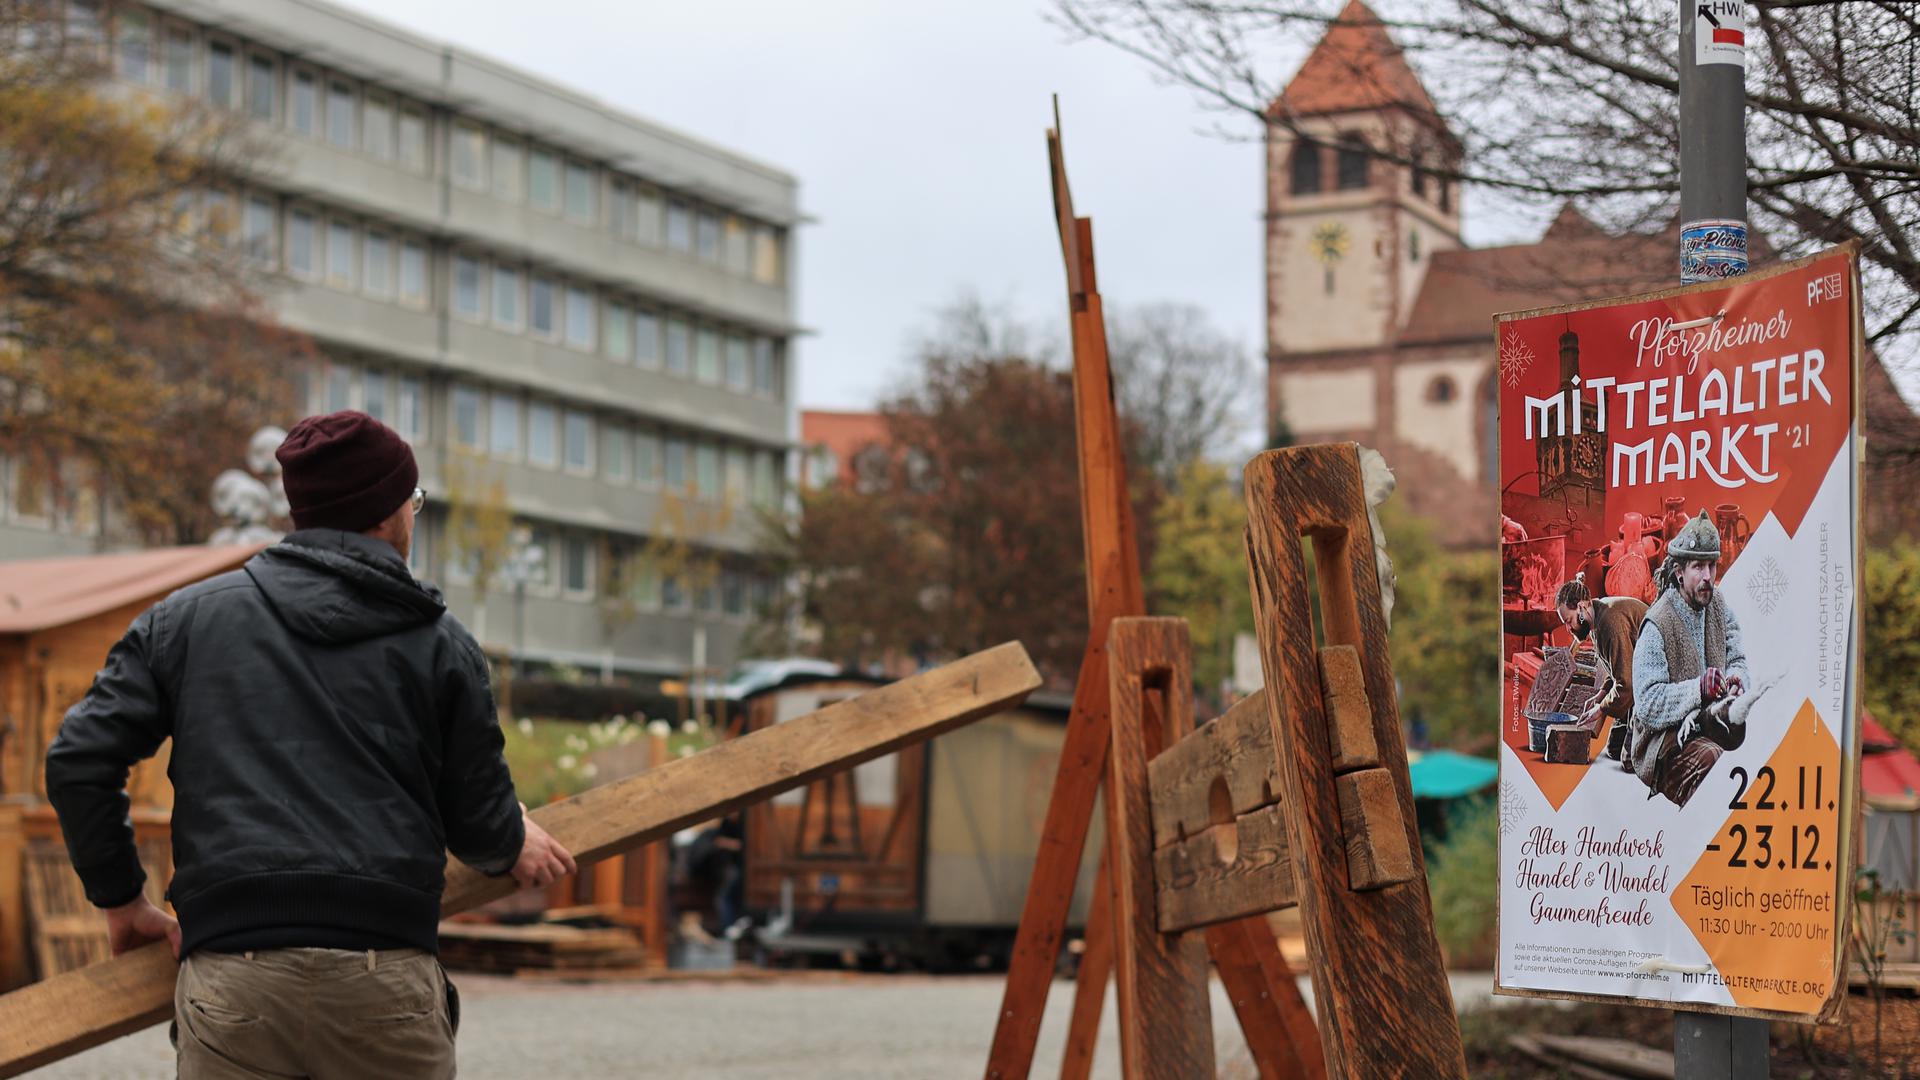 Bauen statt bangen: Für den Mittelaltermarkt im Pforzheimer Blumenhof gingen noch am Montag die Aufbauarbeiten unverdrossen voran.